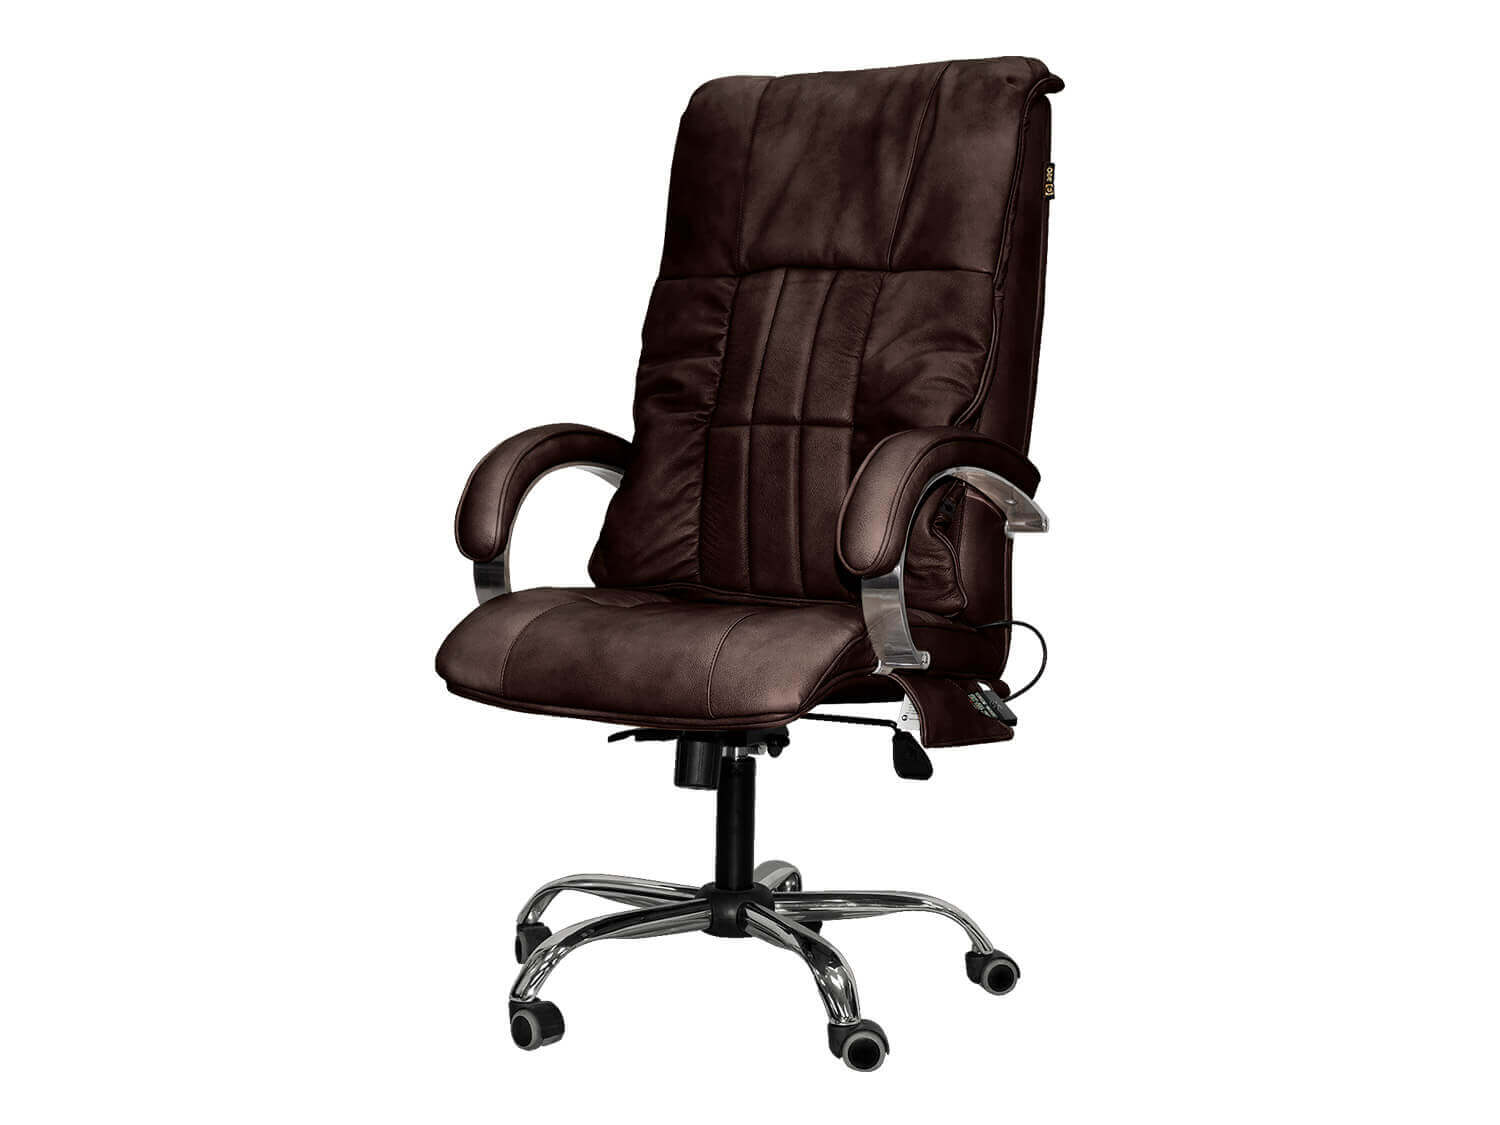 Хорошее офисное кресло для спины и шеи